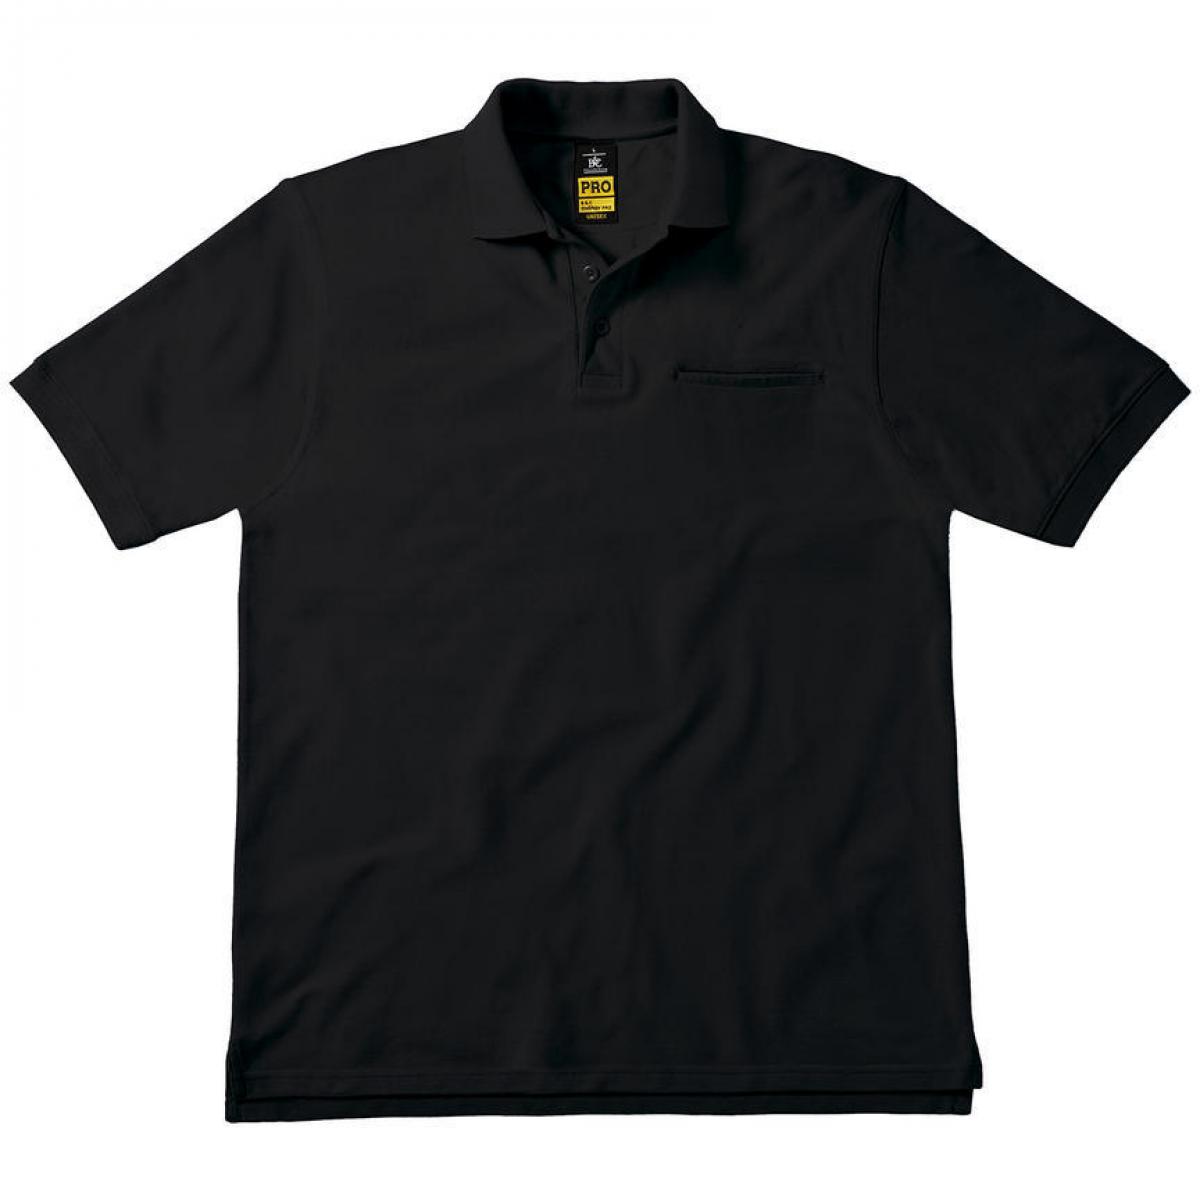 Hersteller: B&C Pro Collection Herstellernummer: PUC11 Artikelbezeichnung: Energy Pro Workwear Pocket Poloshirt für Herren Farbe: Black